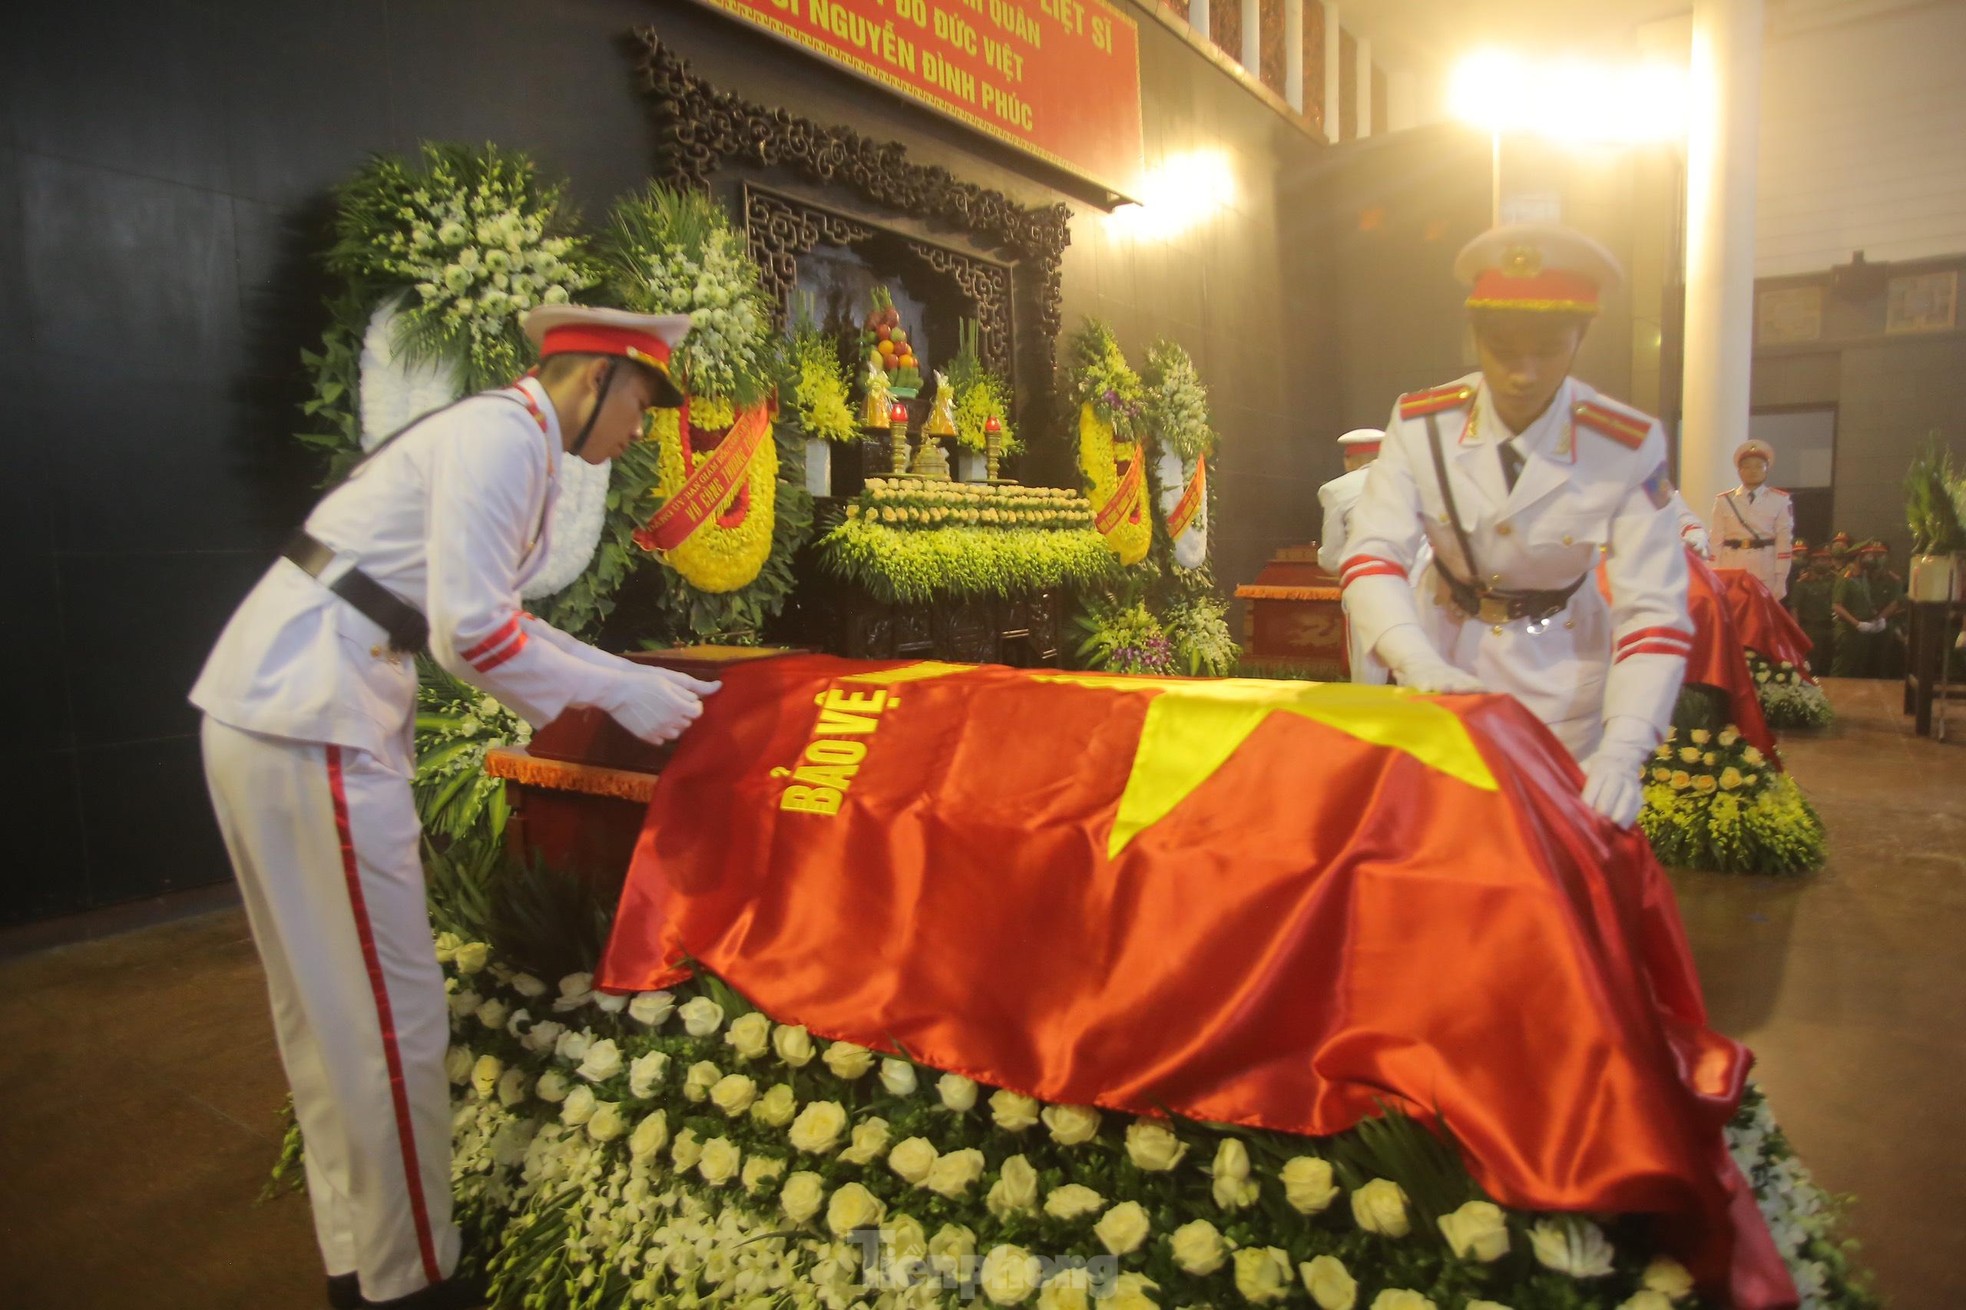 Xúc động nghi lễ phủ Quốc kỳ lên linh cữu 3 liệt sĩ cảnh sát PCCC - Ảnh 6.